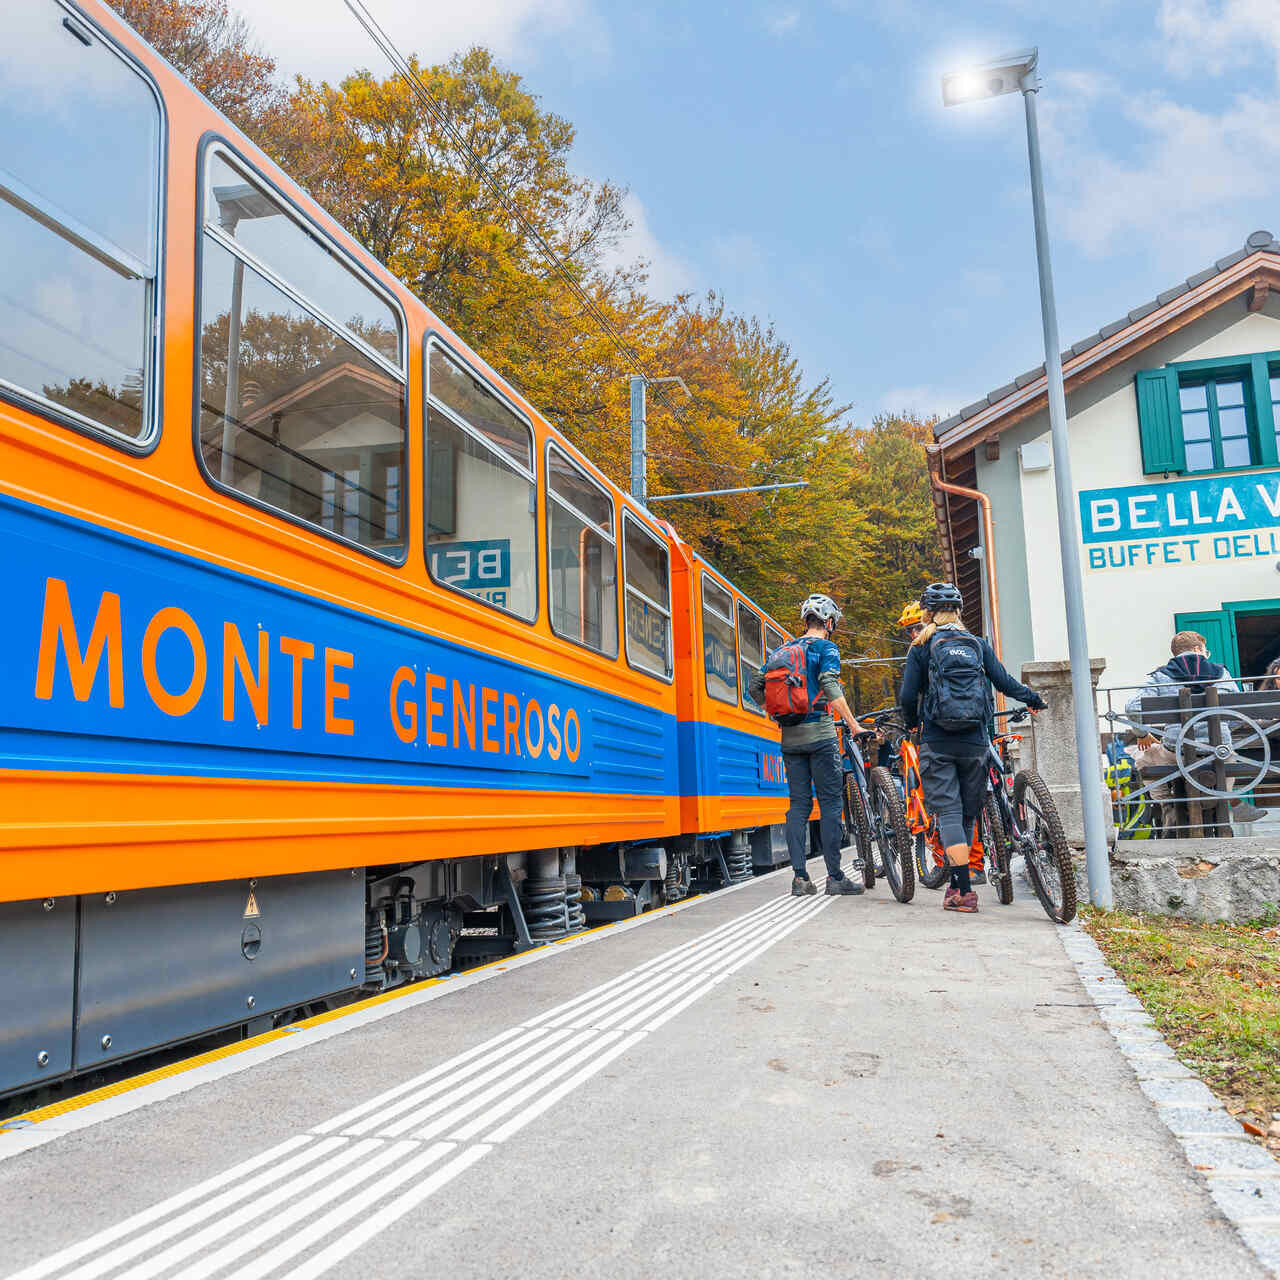 Monte Generoso: класічныя сінія і аранжавыя вагоны чыгункі